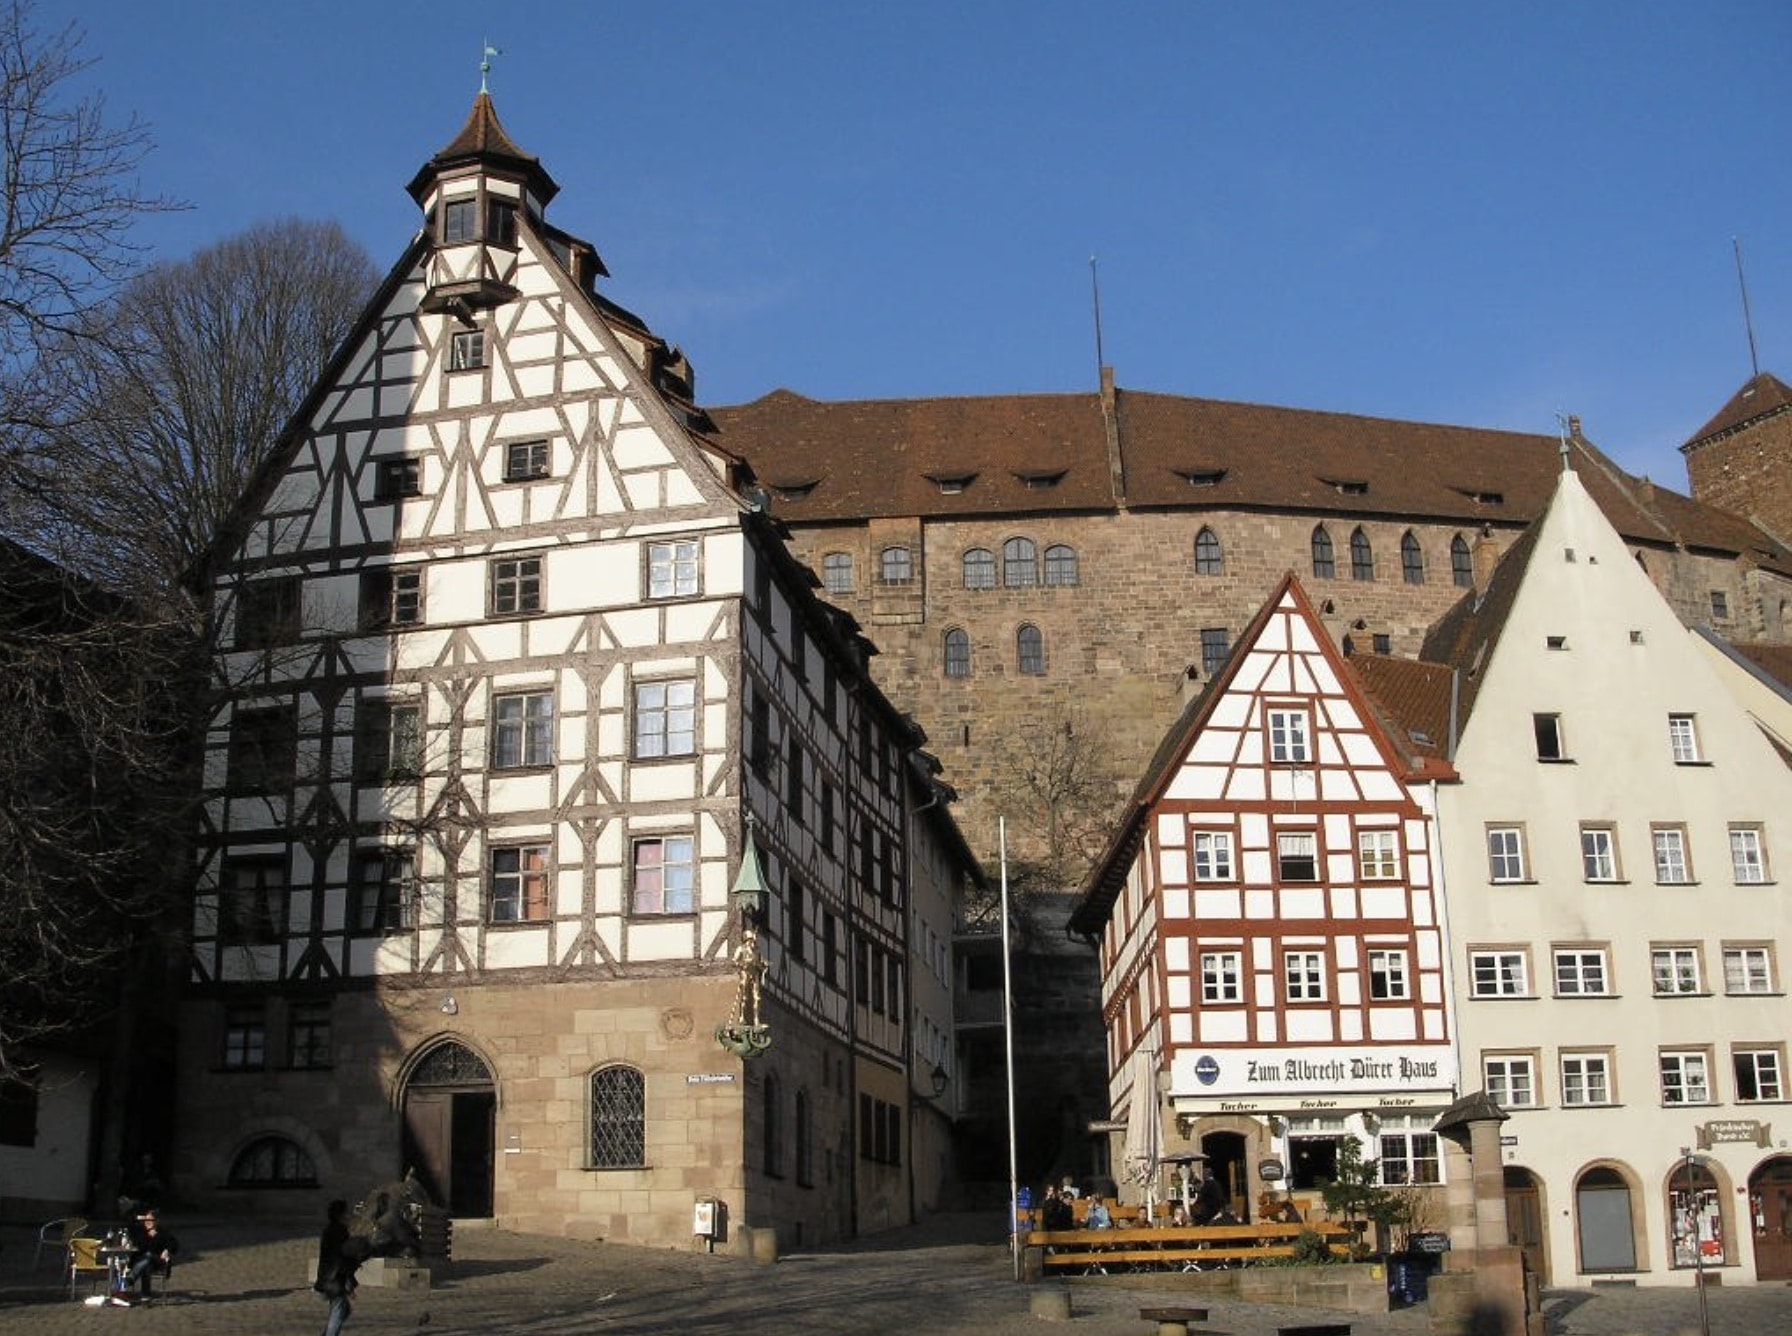 Das Pilatushaus (links) beim Tiergärtnertor in Nürnberg. Das stattliche Bürgerhaus aus der Spätgotik steht seit Jahren leer. Jetzt sanieren es die Altstadtfreunde e. V.; Foto: Wikimedia Commons / Gryffindor